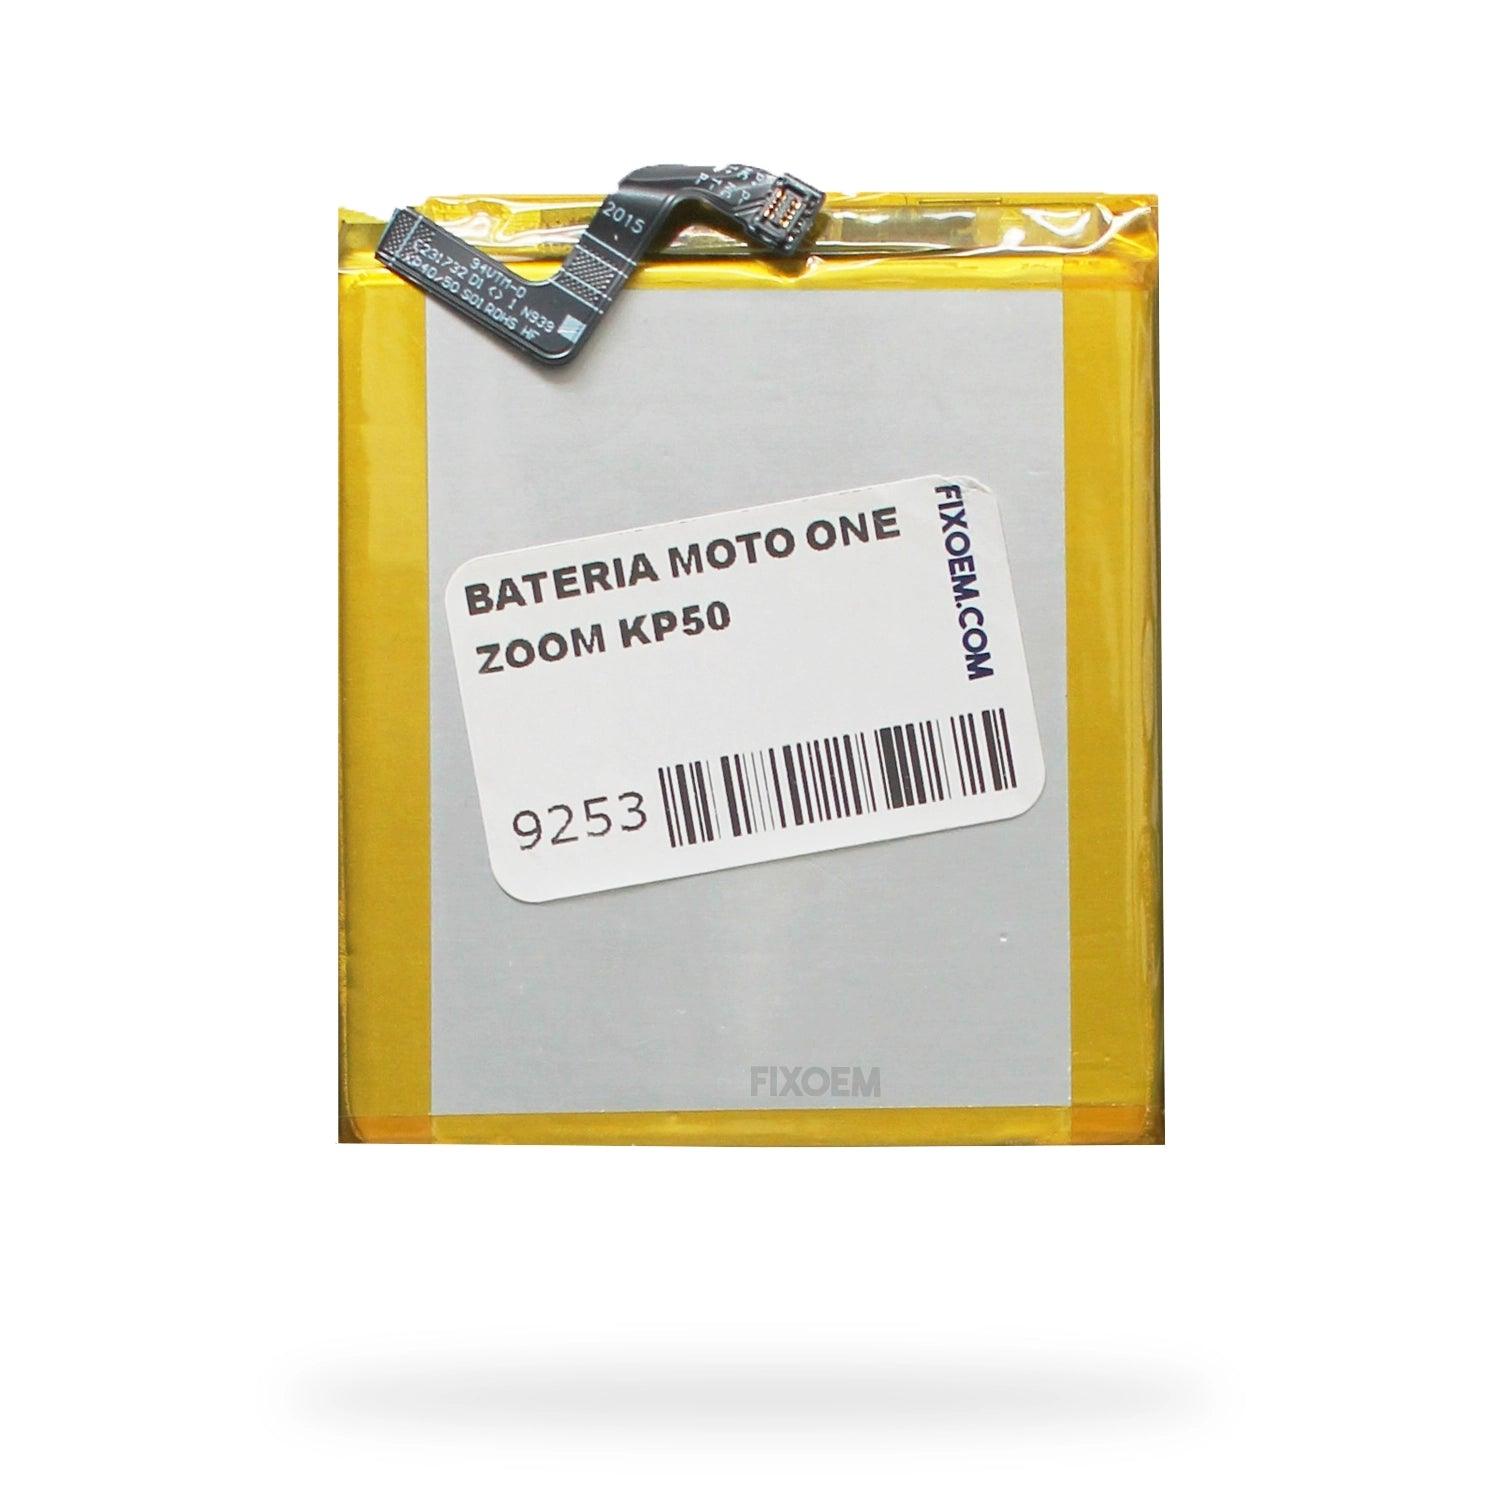 Bateria Moto One Zoom Xt2010 Kp50. a solo $ 160.00 Refaccion y puestos celulares, refurbish y microelectronica.- FixOEM